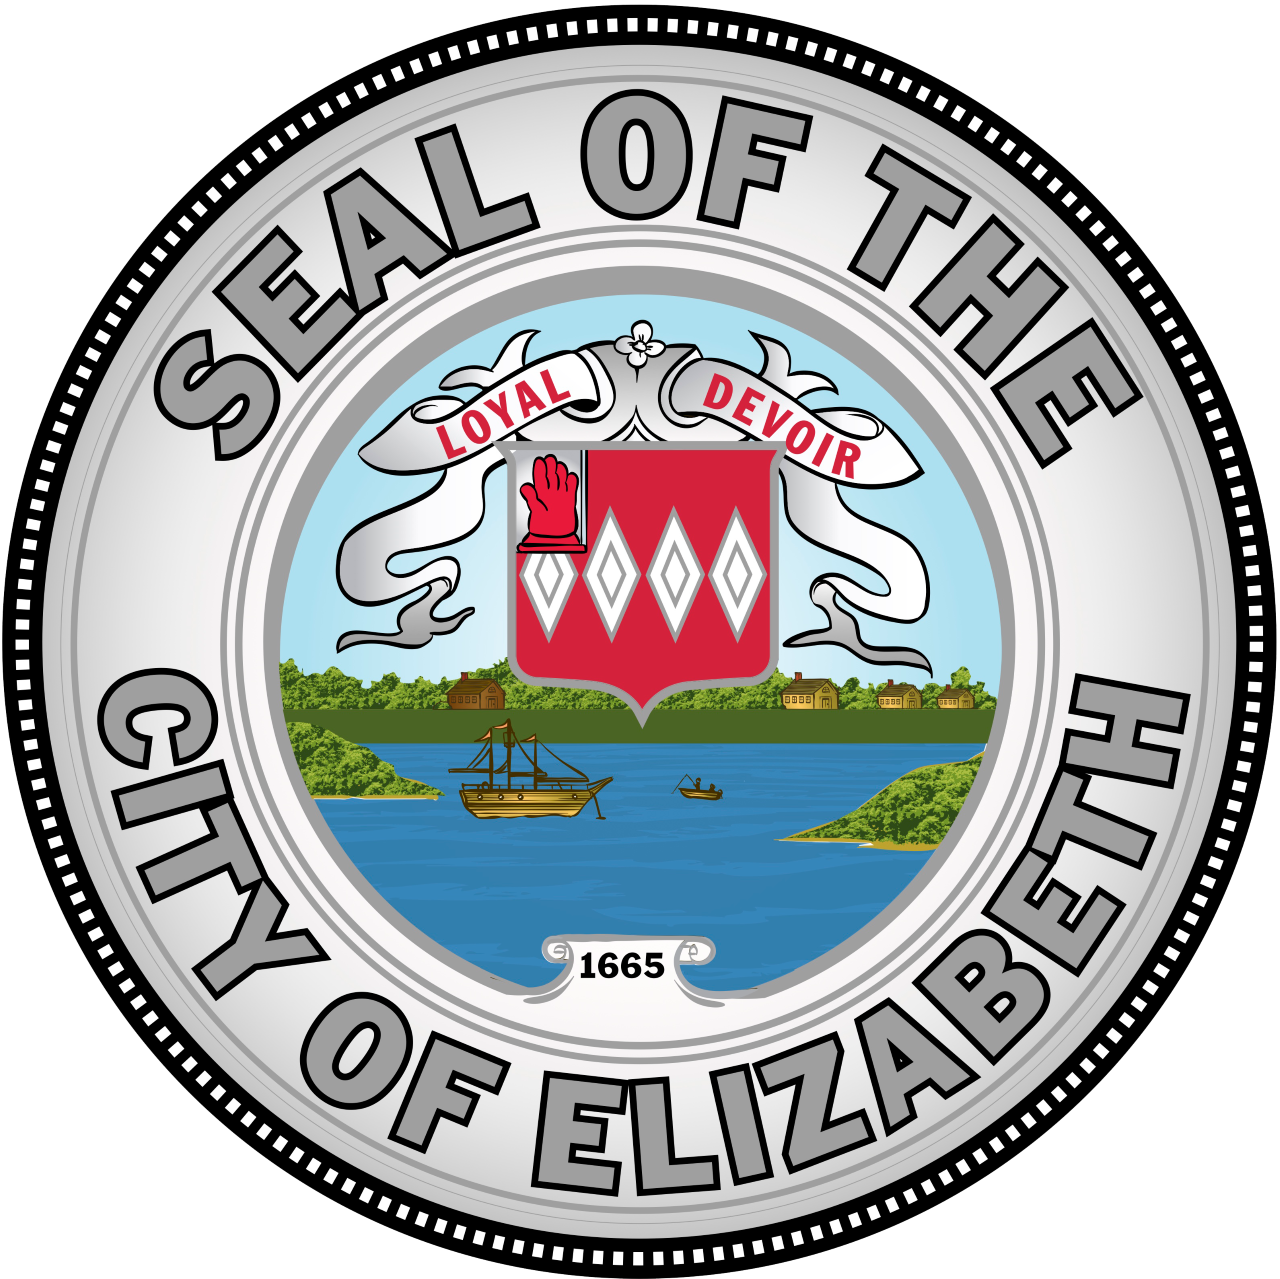 City of Elizabeth Seal